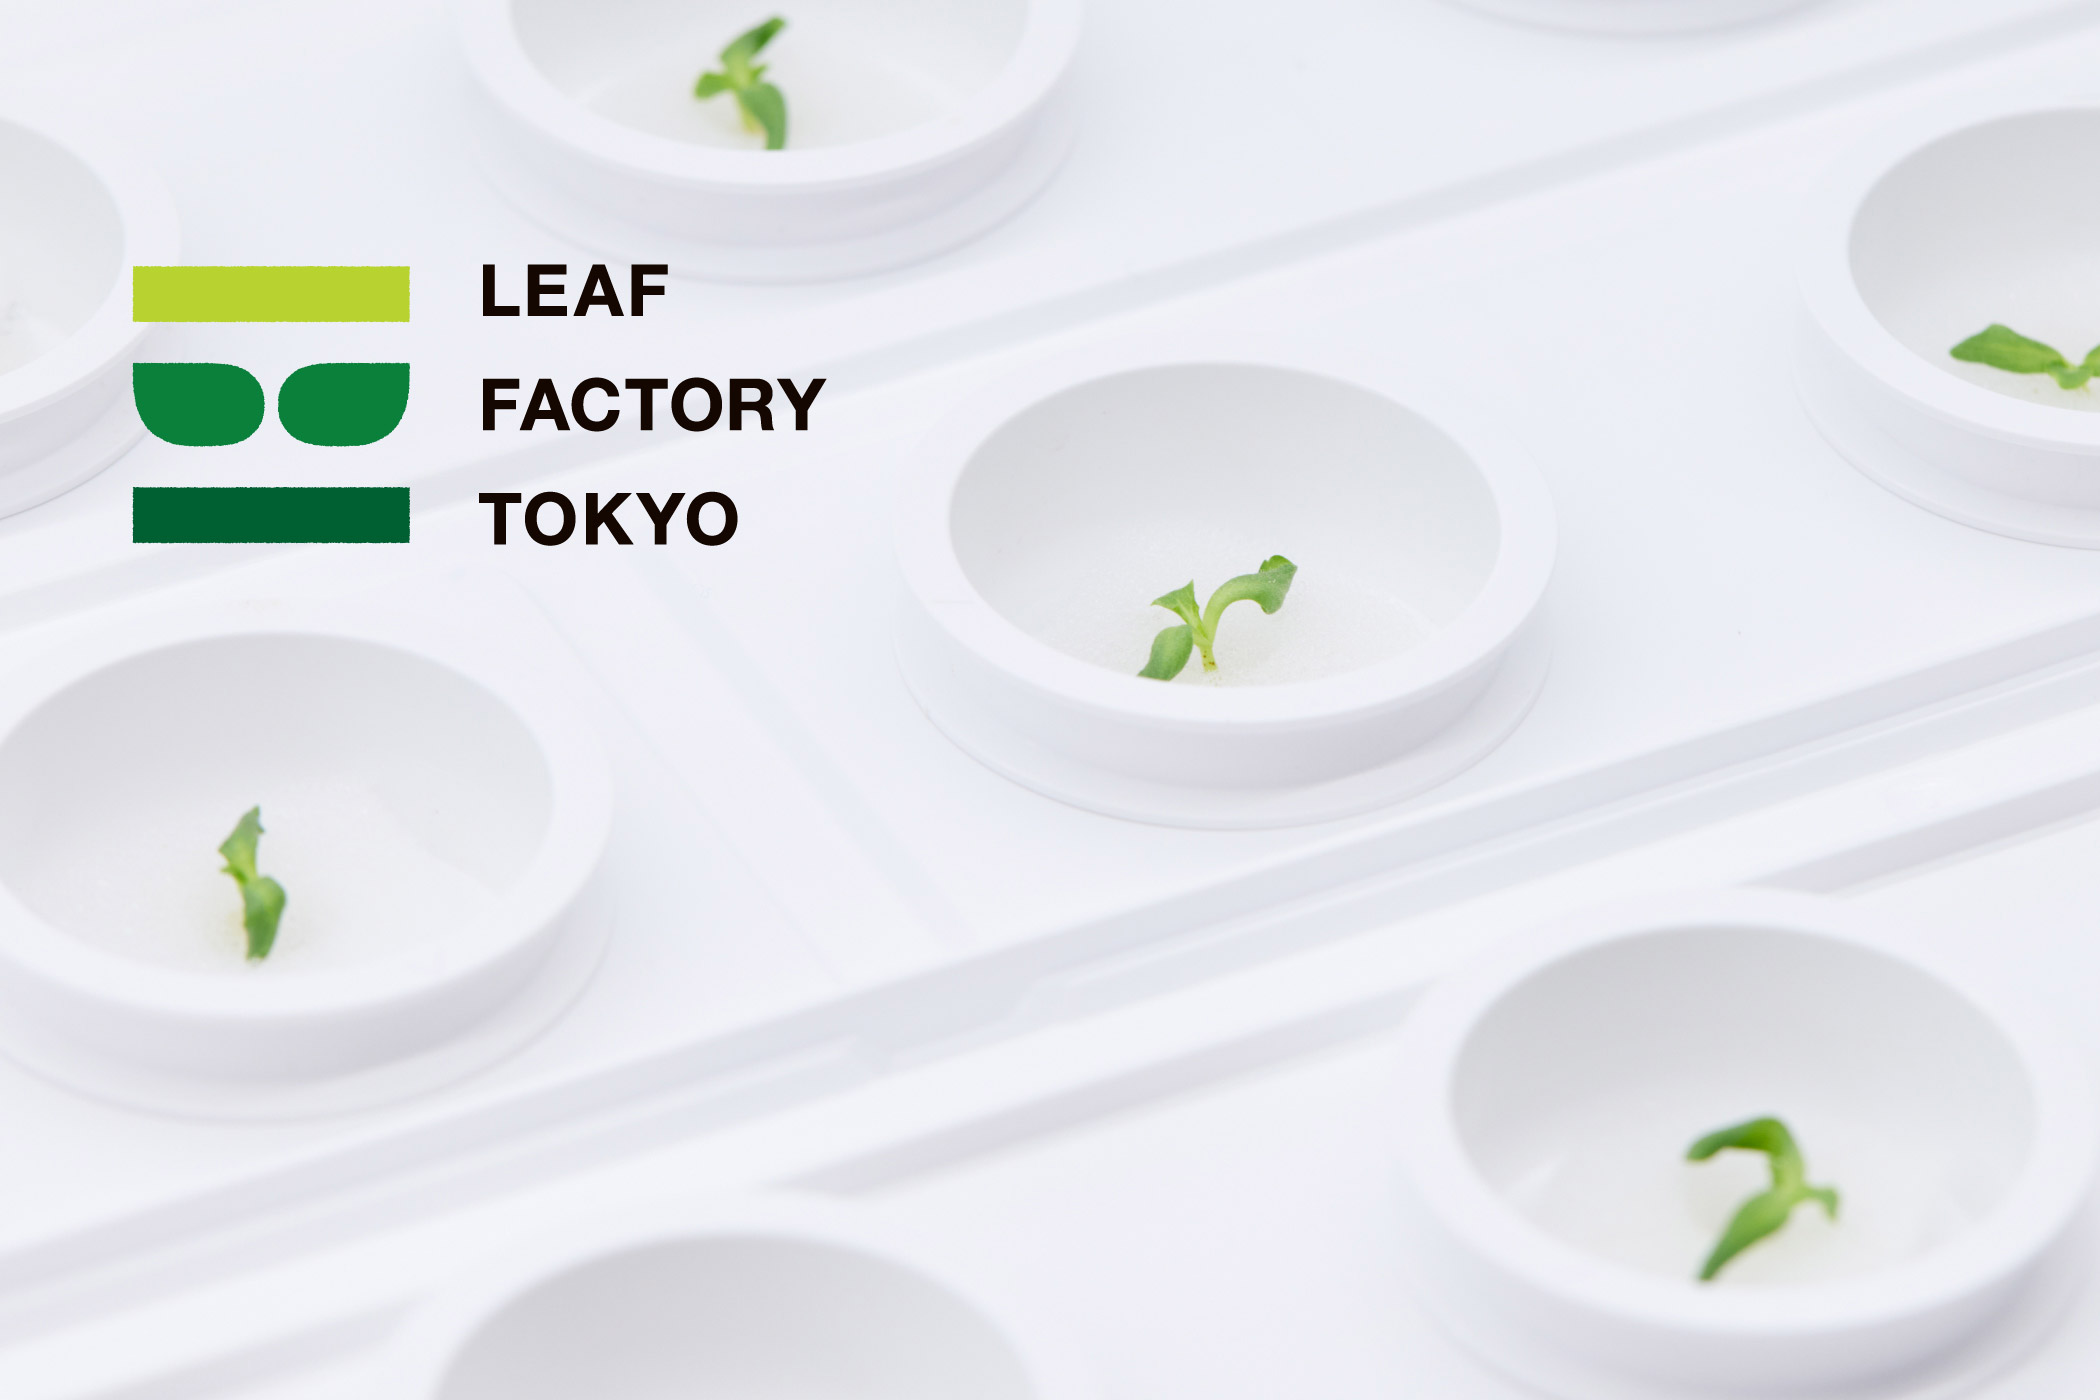 LEAF FACTORY TOKYO